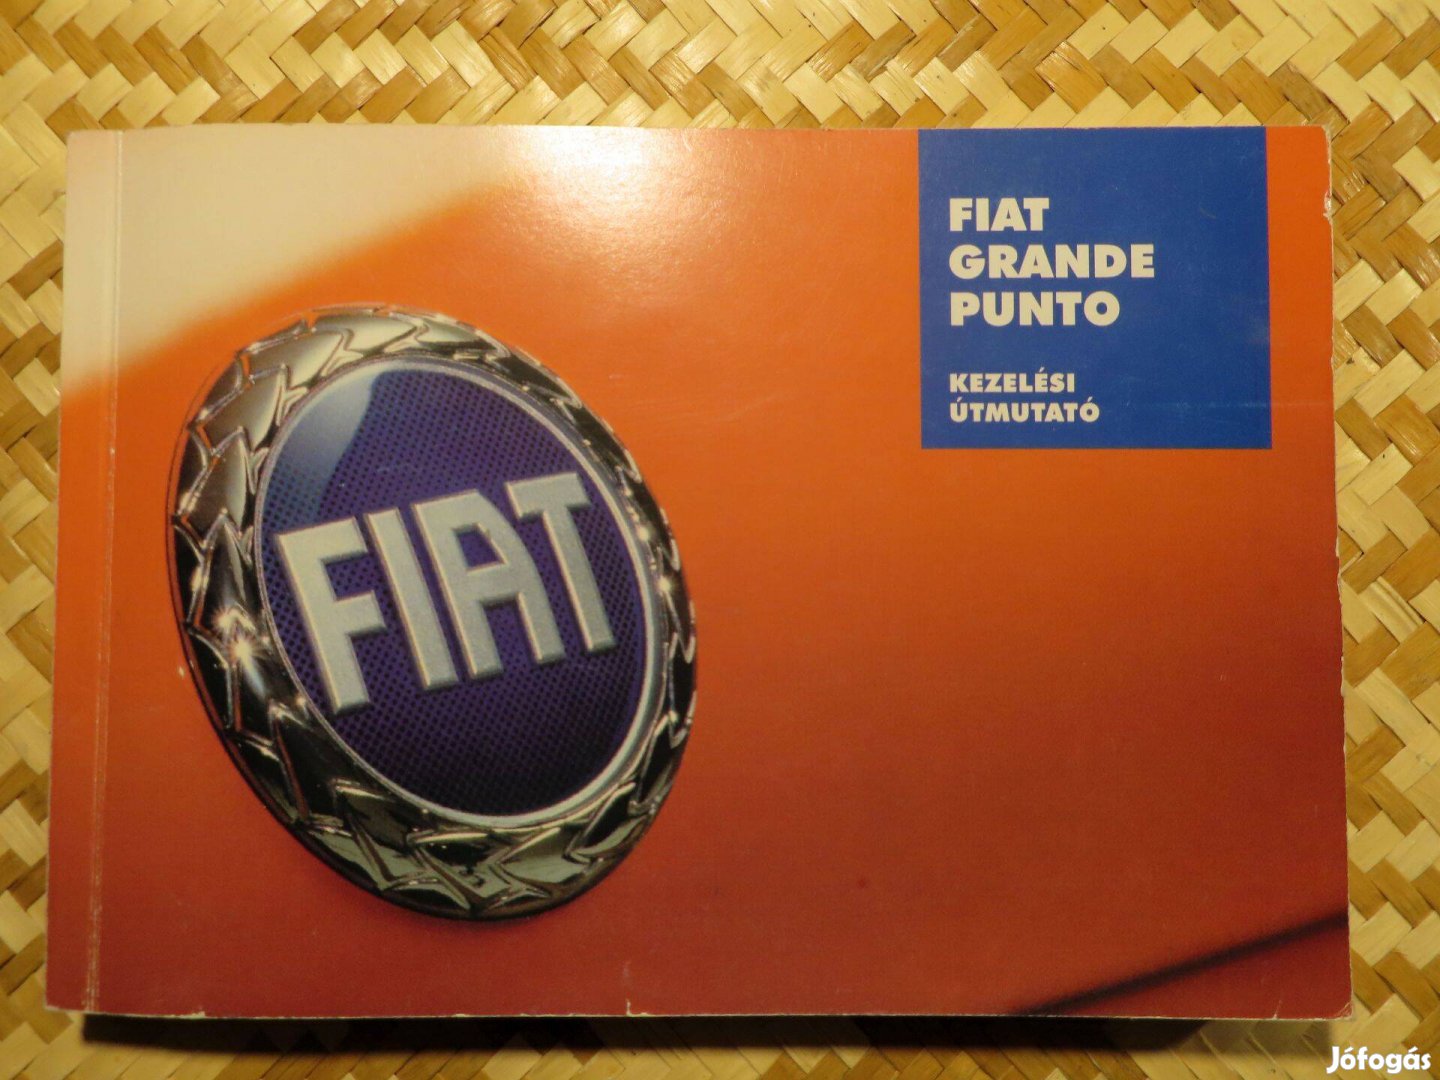 Fiat Grande Puntó magyar nyelvű kezelési útmutató eladó